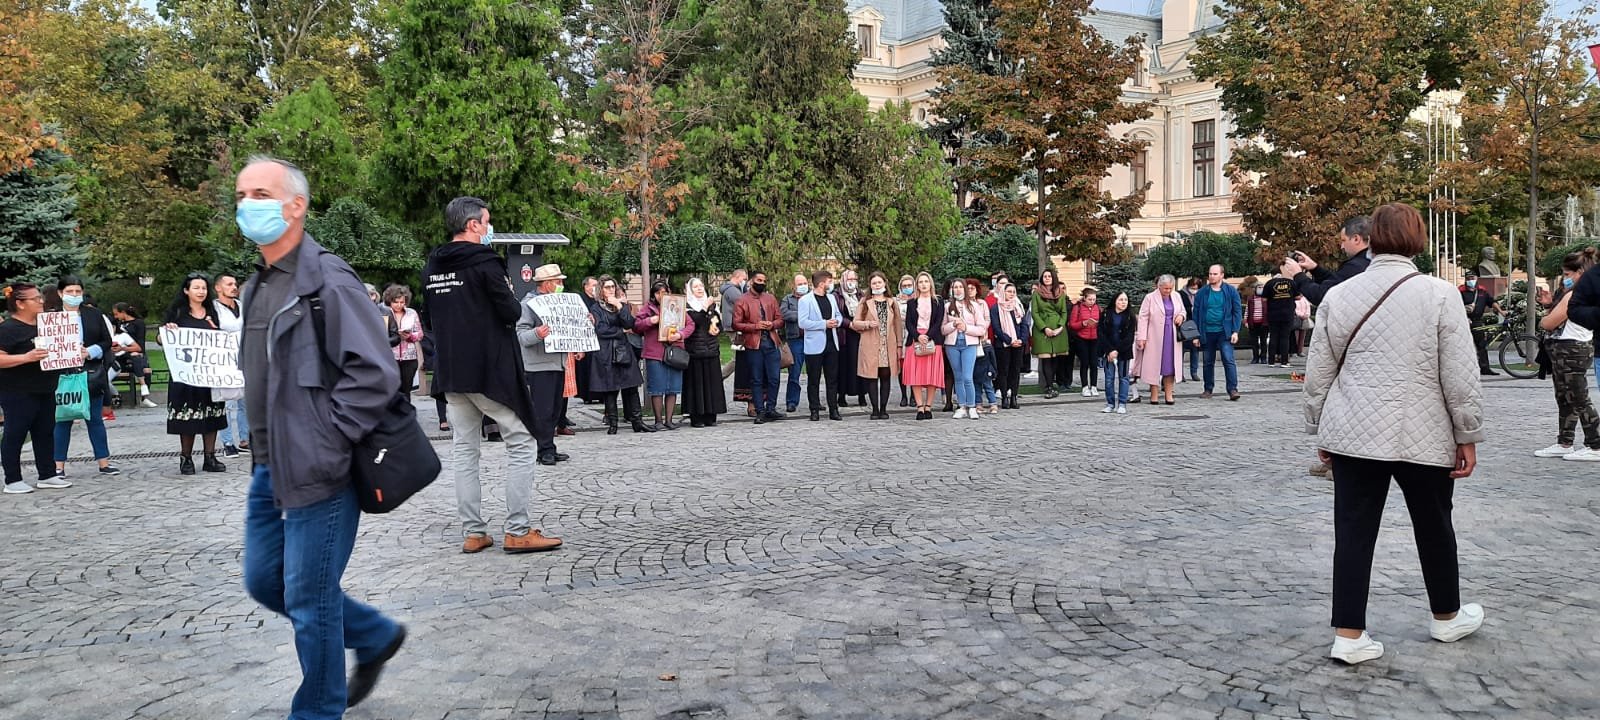  VIDEO-Câteva zeci de persoane au protestat în faţa Mitropoliei faţă de restricţiile impuse de autorităţi